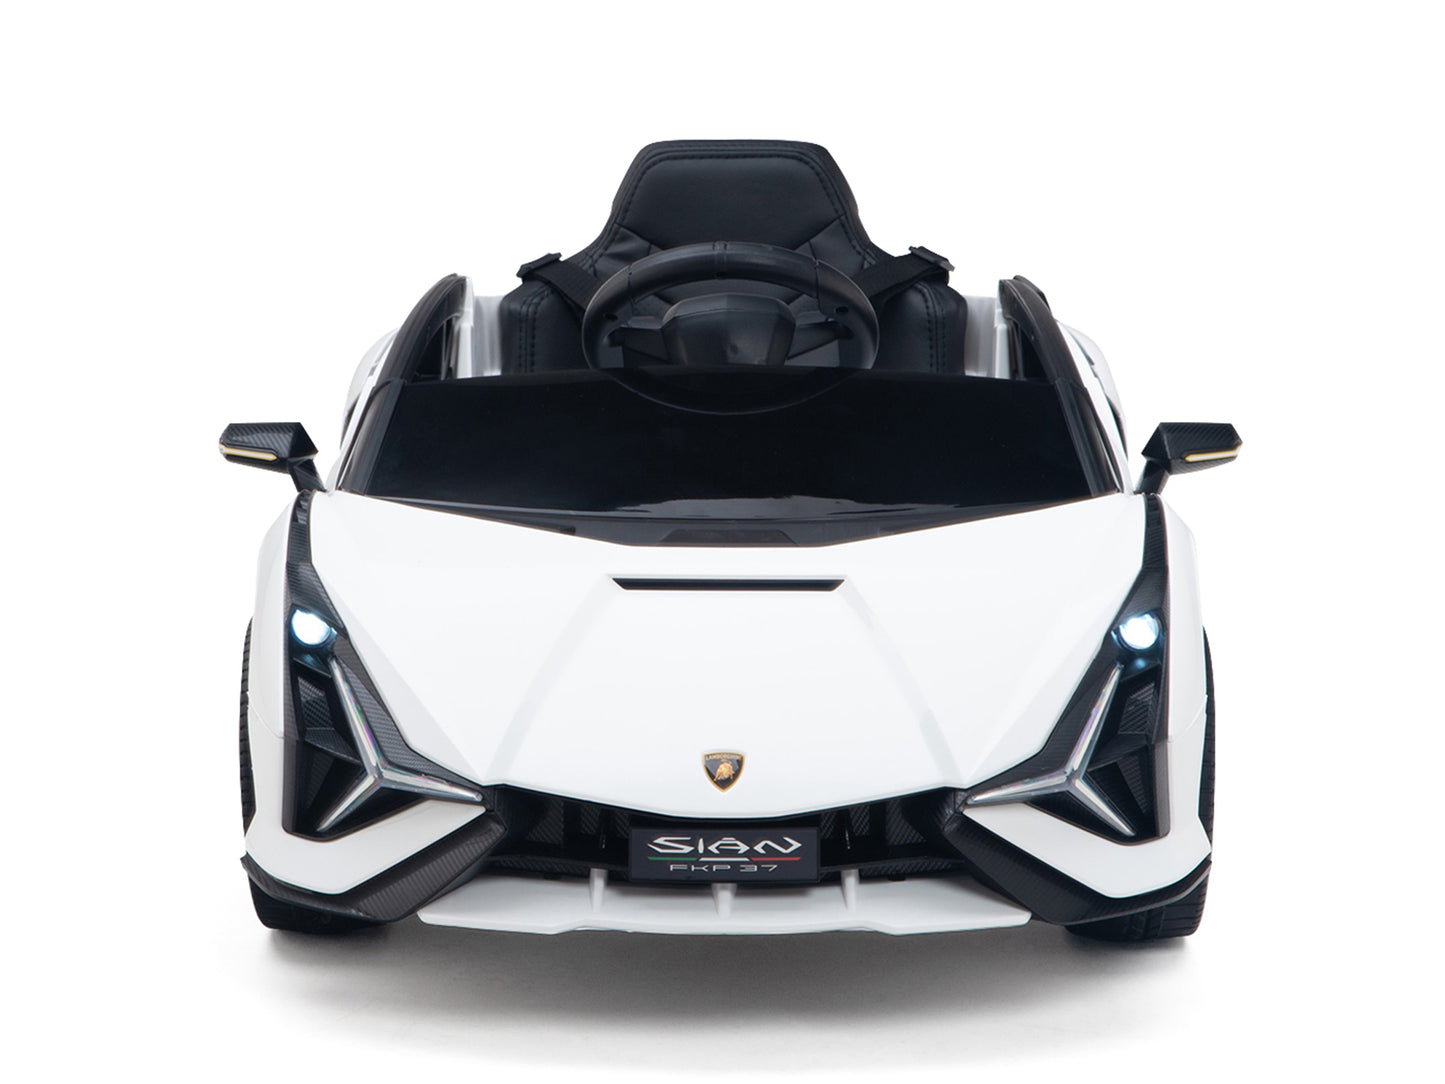 Lamborghini Sian 12V Kids Ride On Car with Remote Control - White